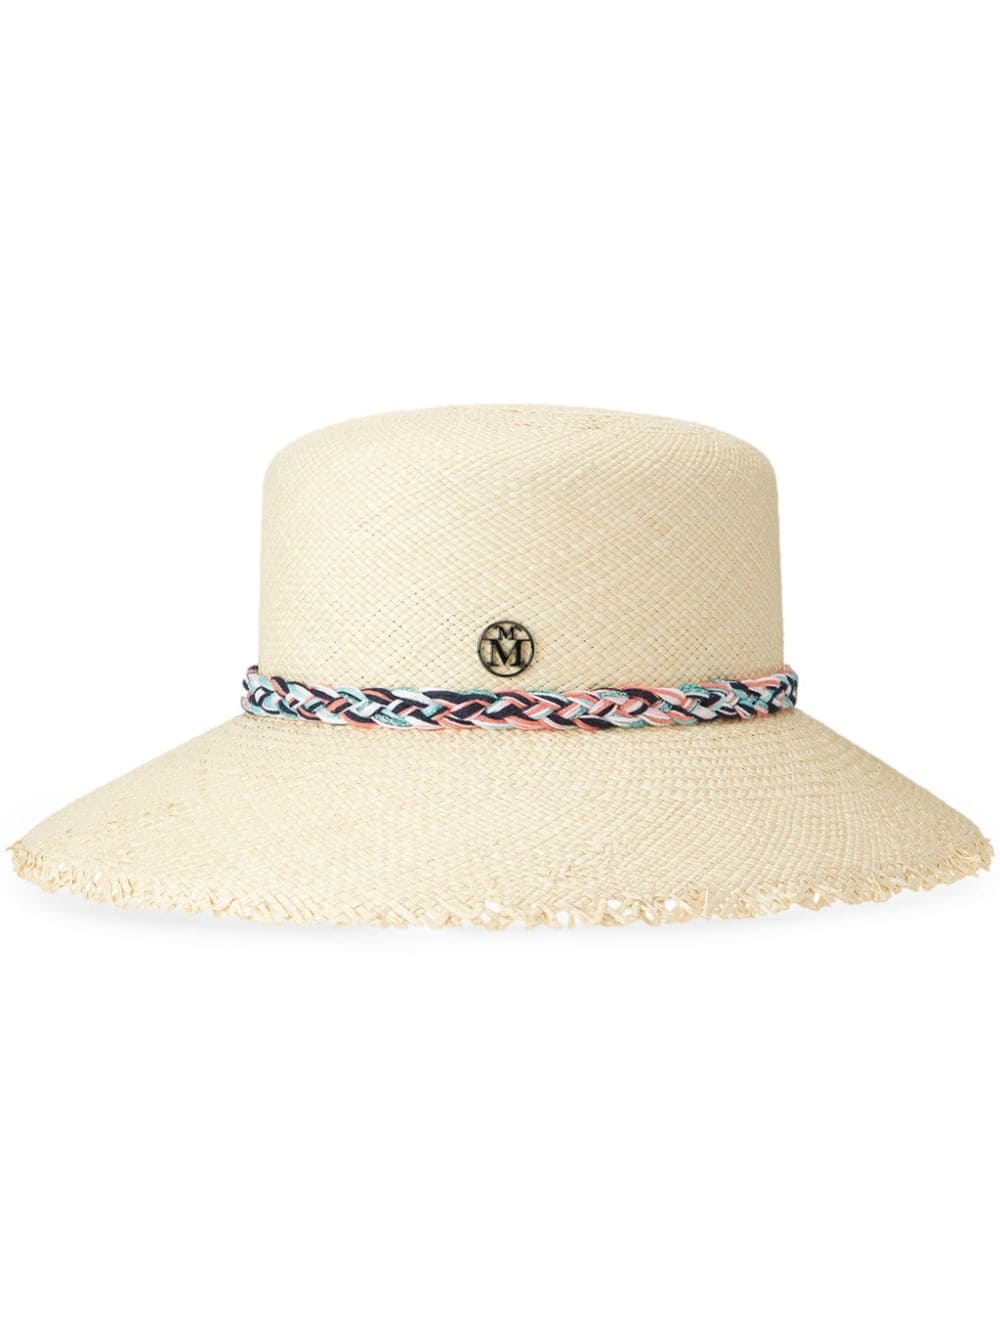 Maison Michel New Kendall Braided-strap Hat In Neutrals